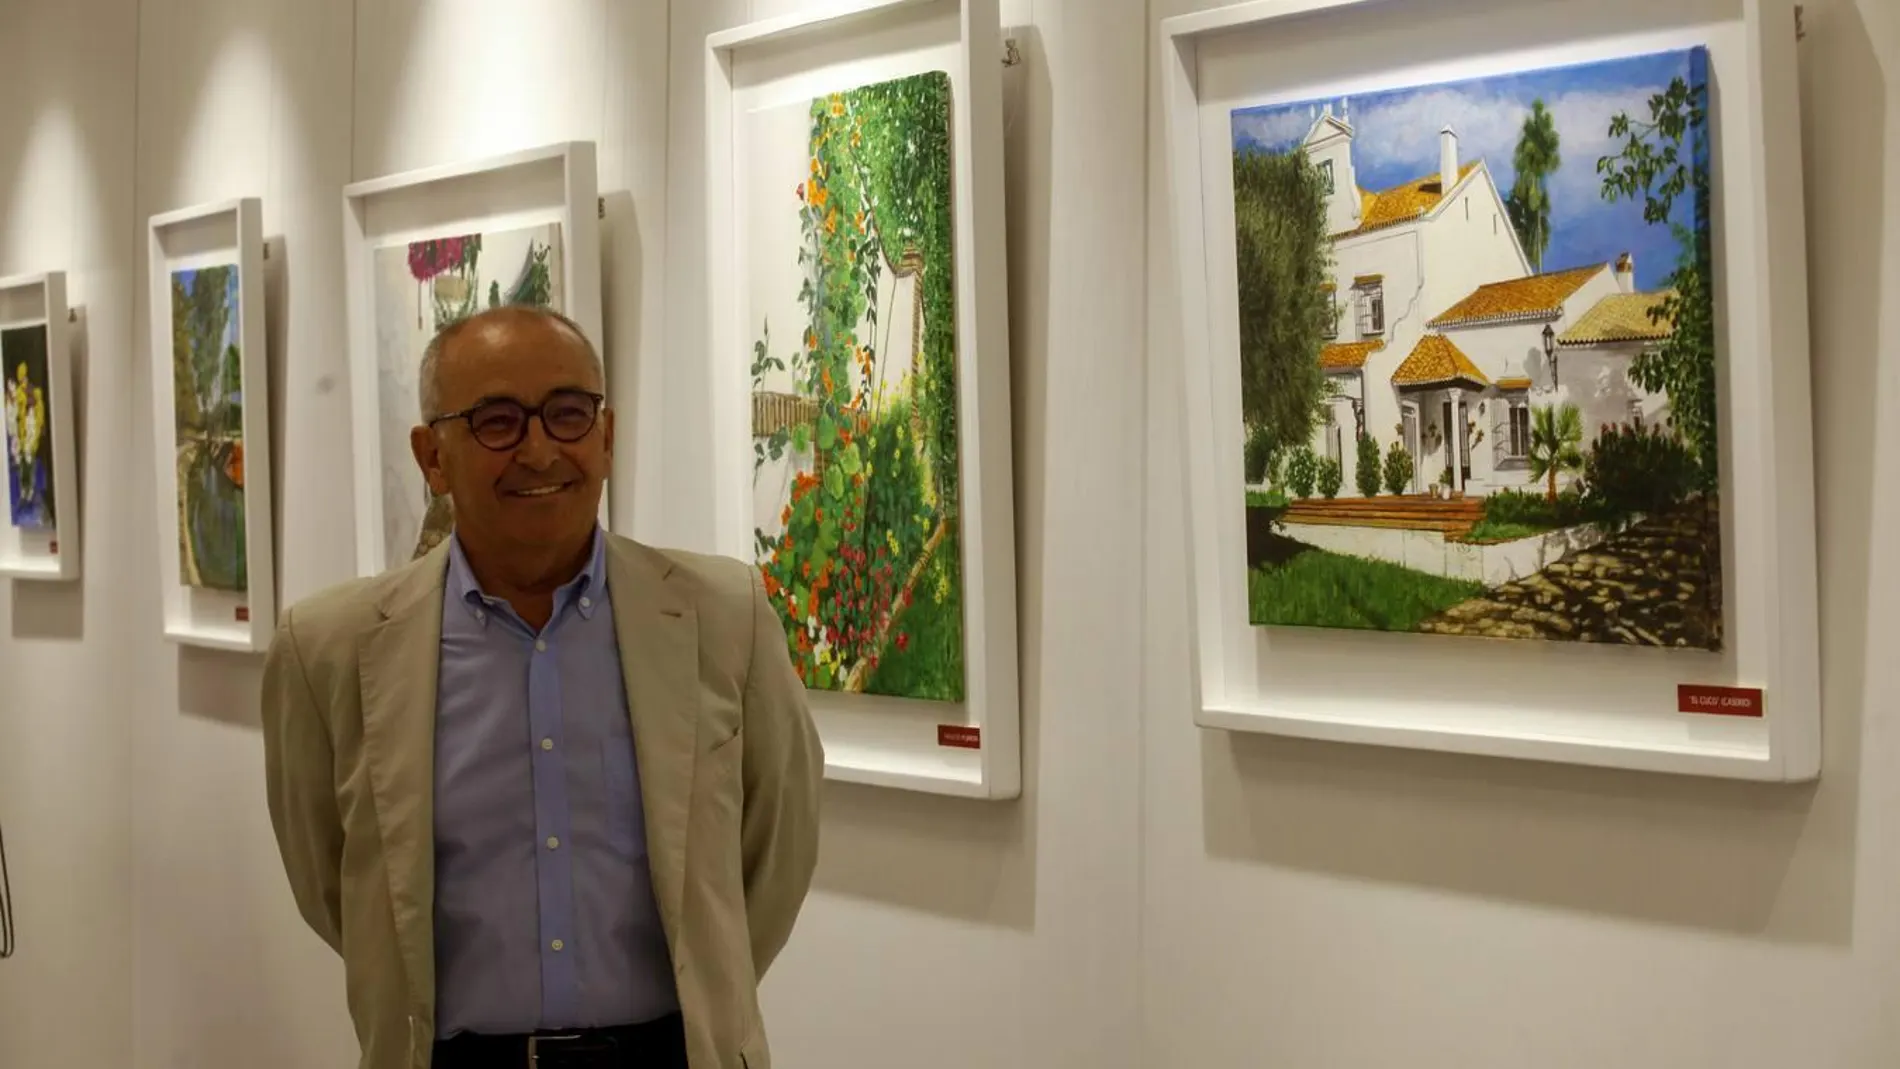 El pintor Alfonso Leal posa junto a sus obras expuestas en la sede de la Fundación Caja Rural del Sur de Sevilla / La Razón